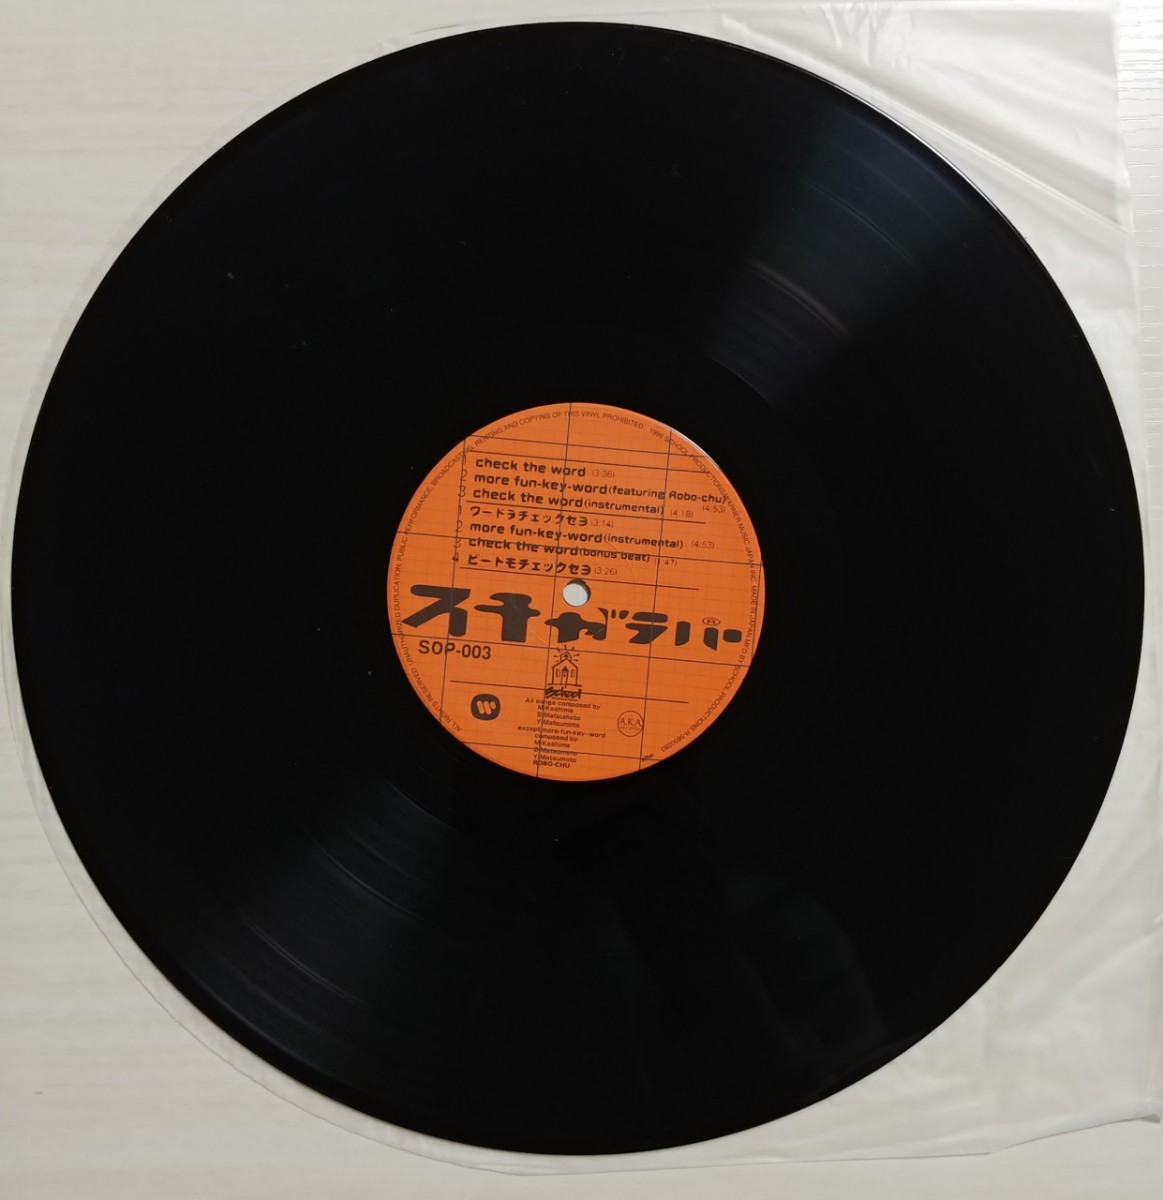 スチャダラパー / CHECK THE WORD (EP)12inchレコード盤